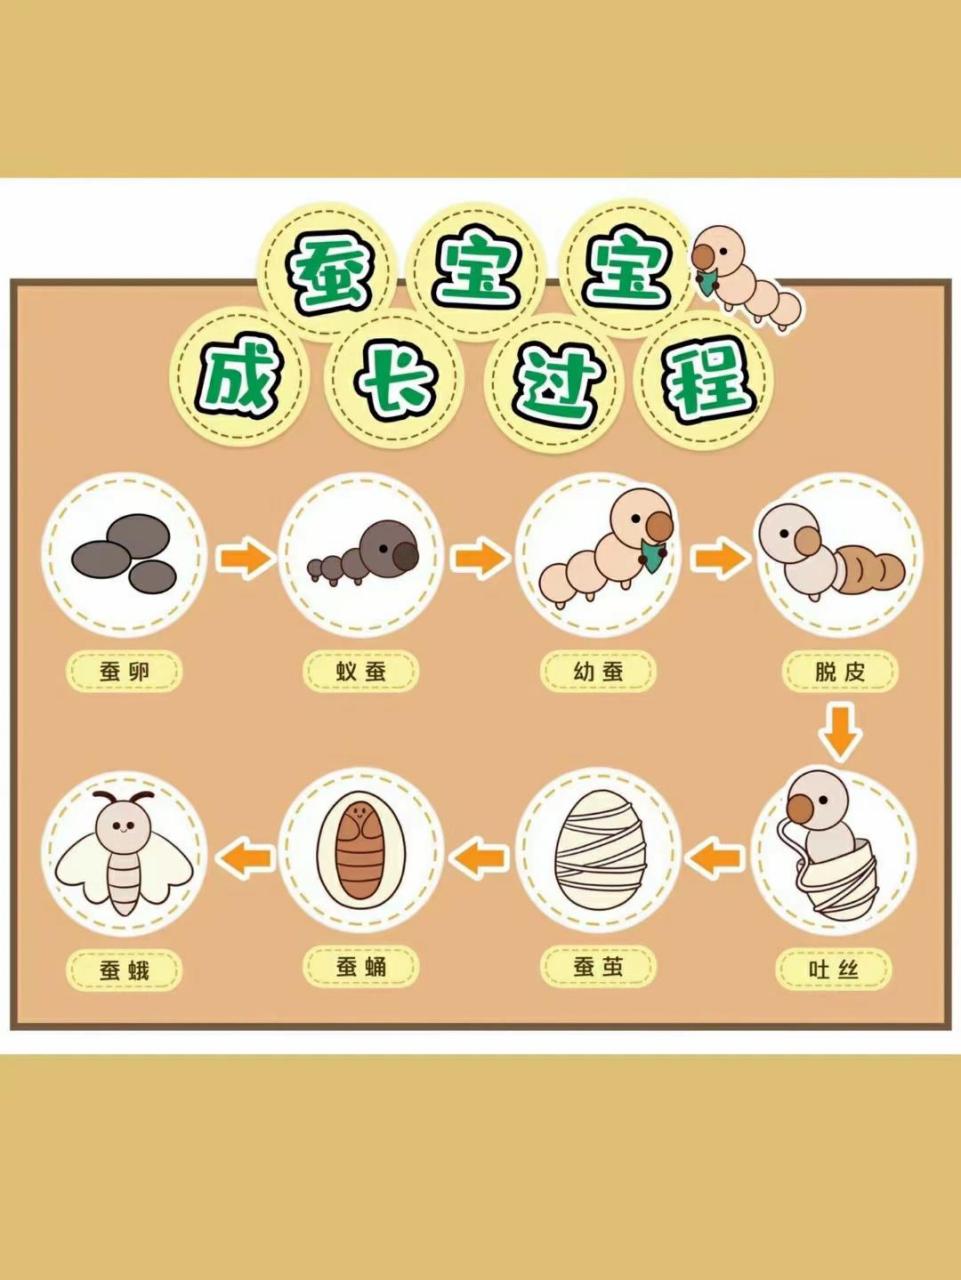 蚕宝宝的生长过程图 蚕的生长过程大概分为五个阶段,分别是孵化,休眠